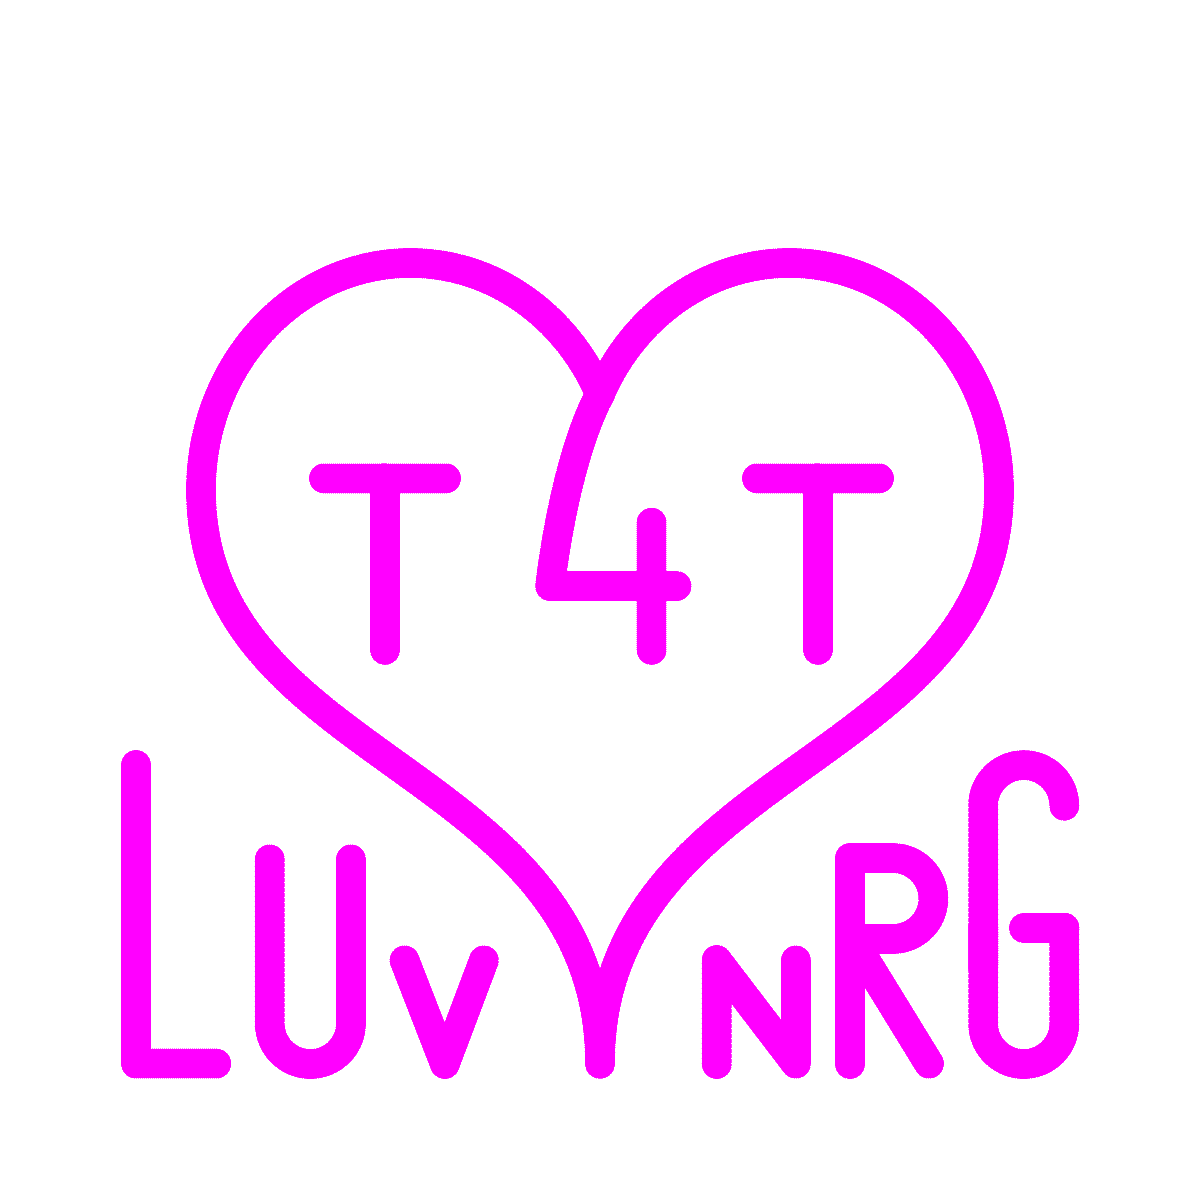 t4tluvnrg_animated_logo